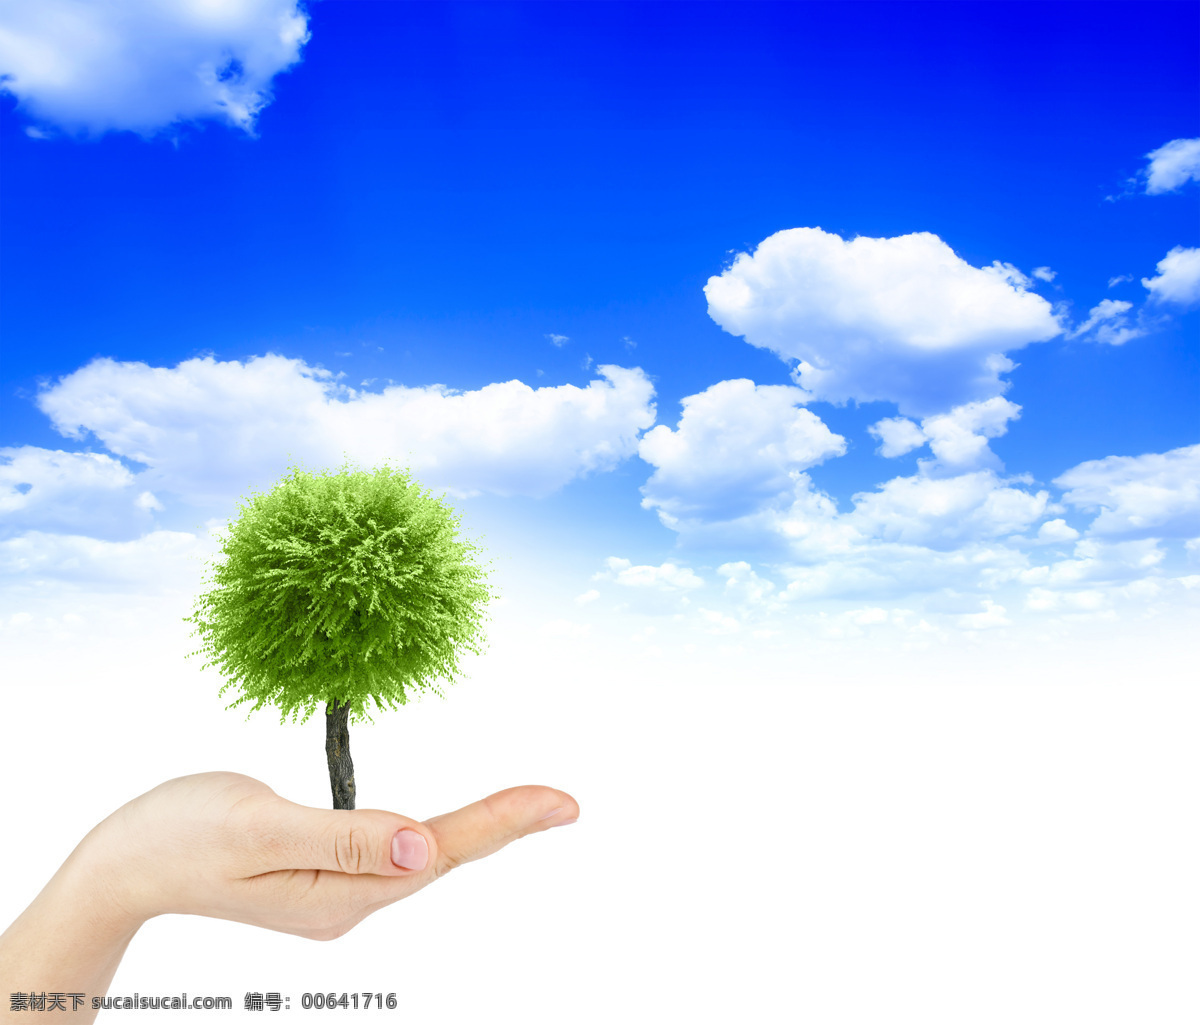 生态 自然 环境 绿色 草地 蓝天 环境保护 白云 大树 手托大树 山水风景 风景图片